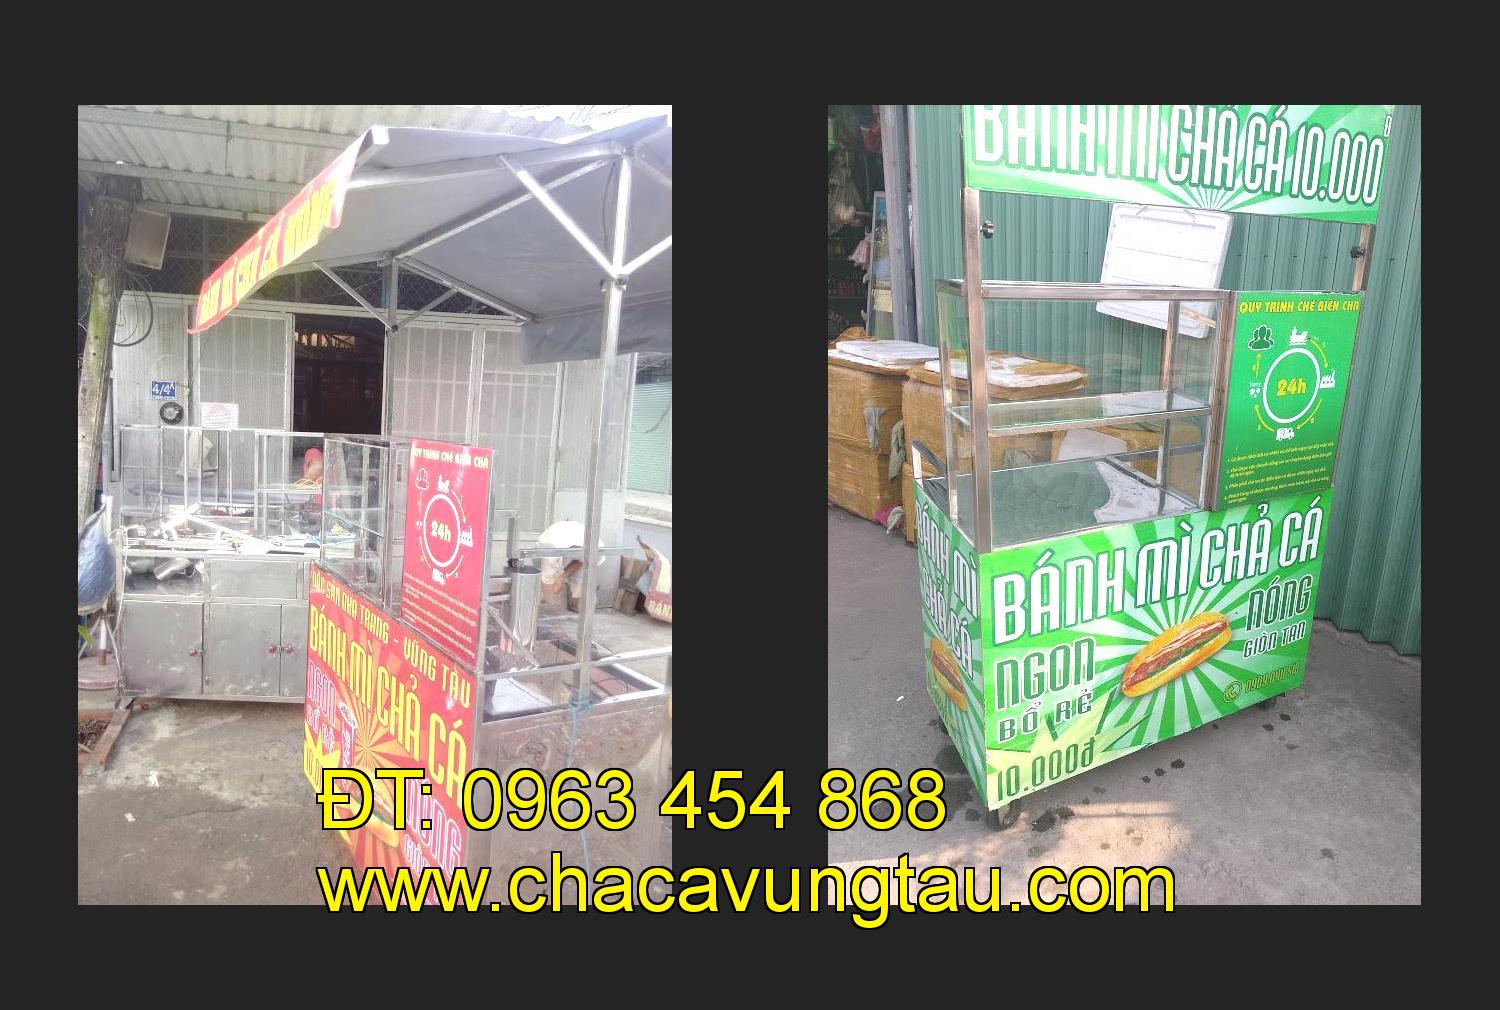 Bán xe bánh mì chả cá tại tỉnh Thừa Thiên Huế